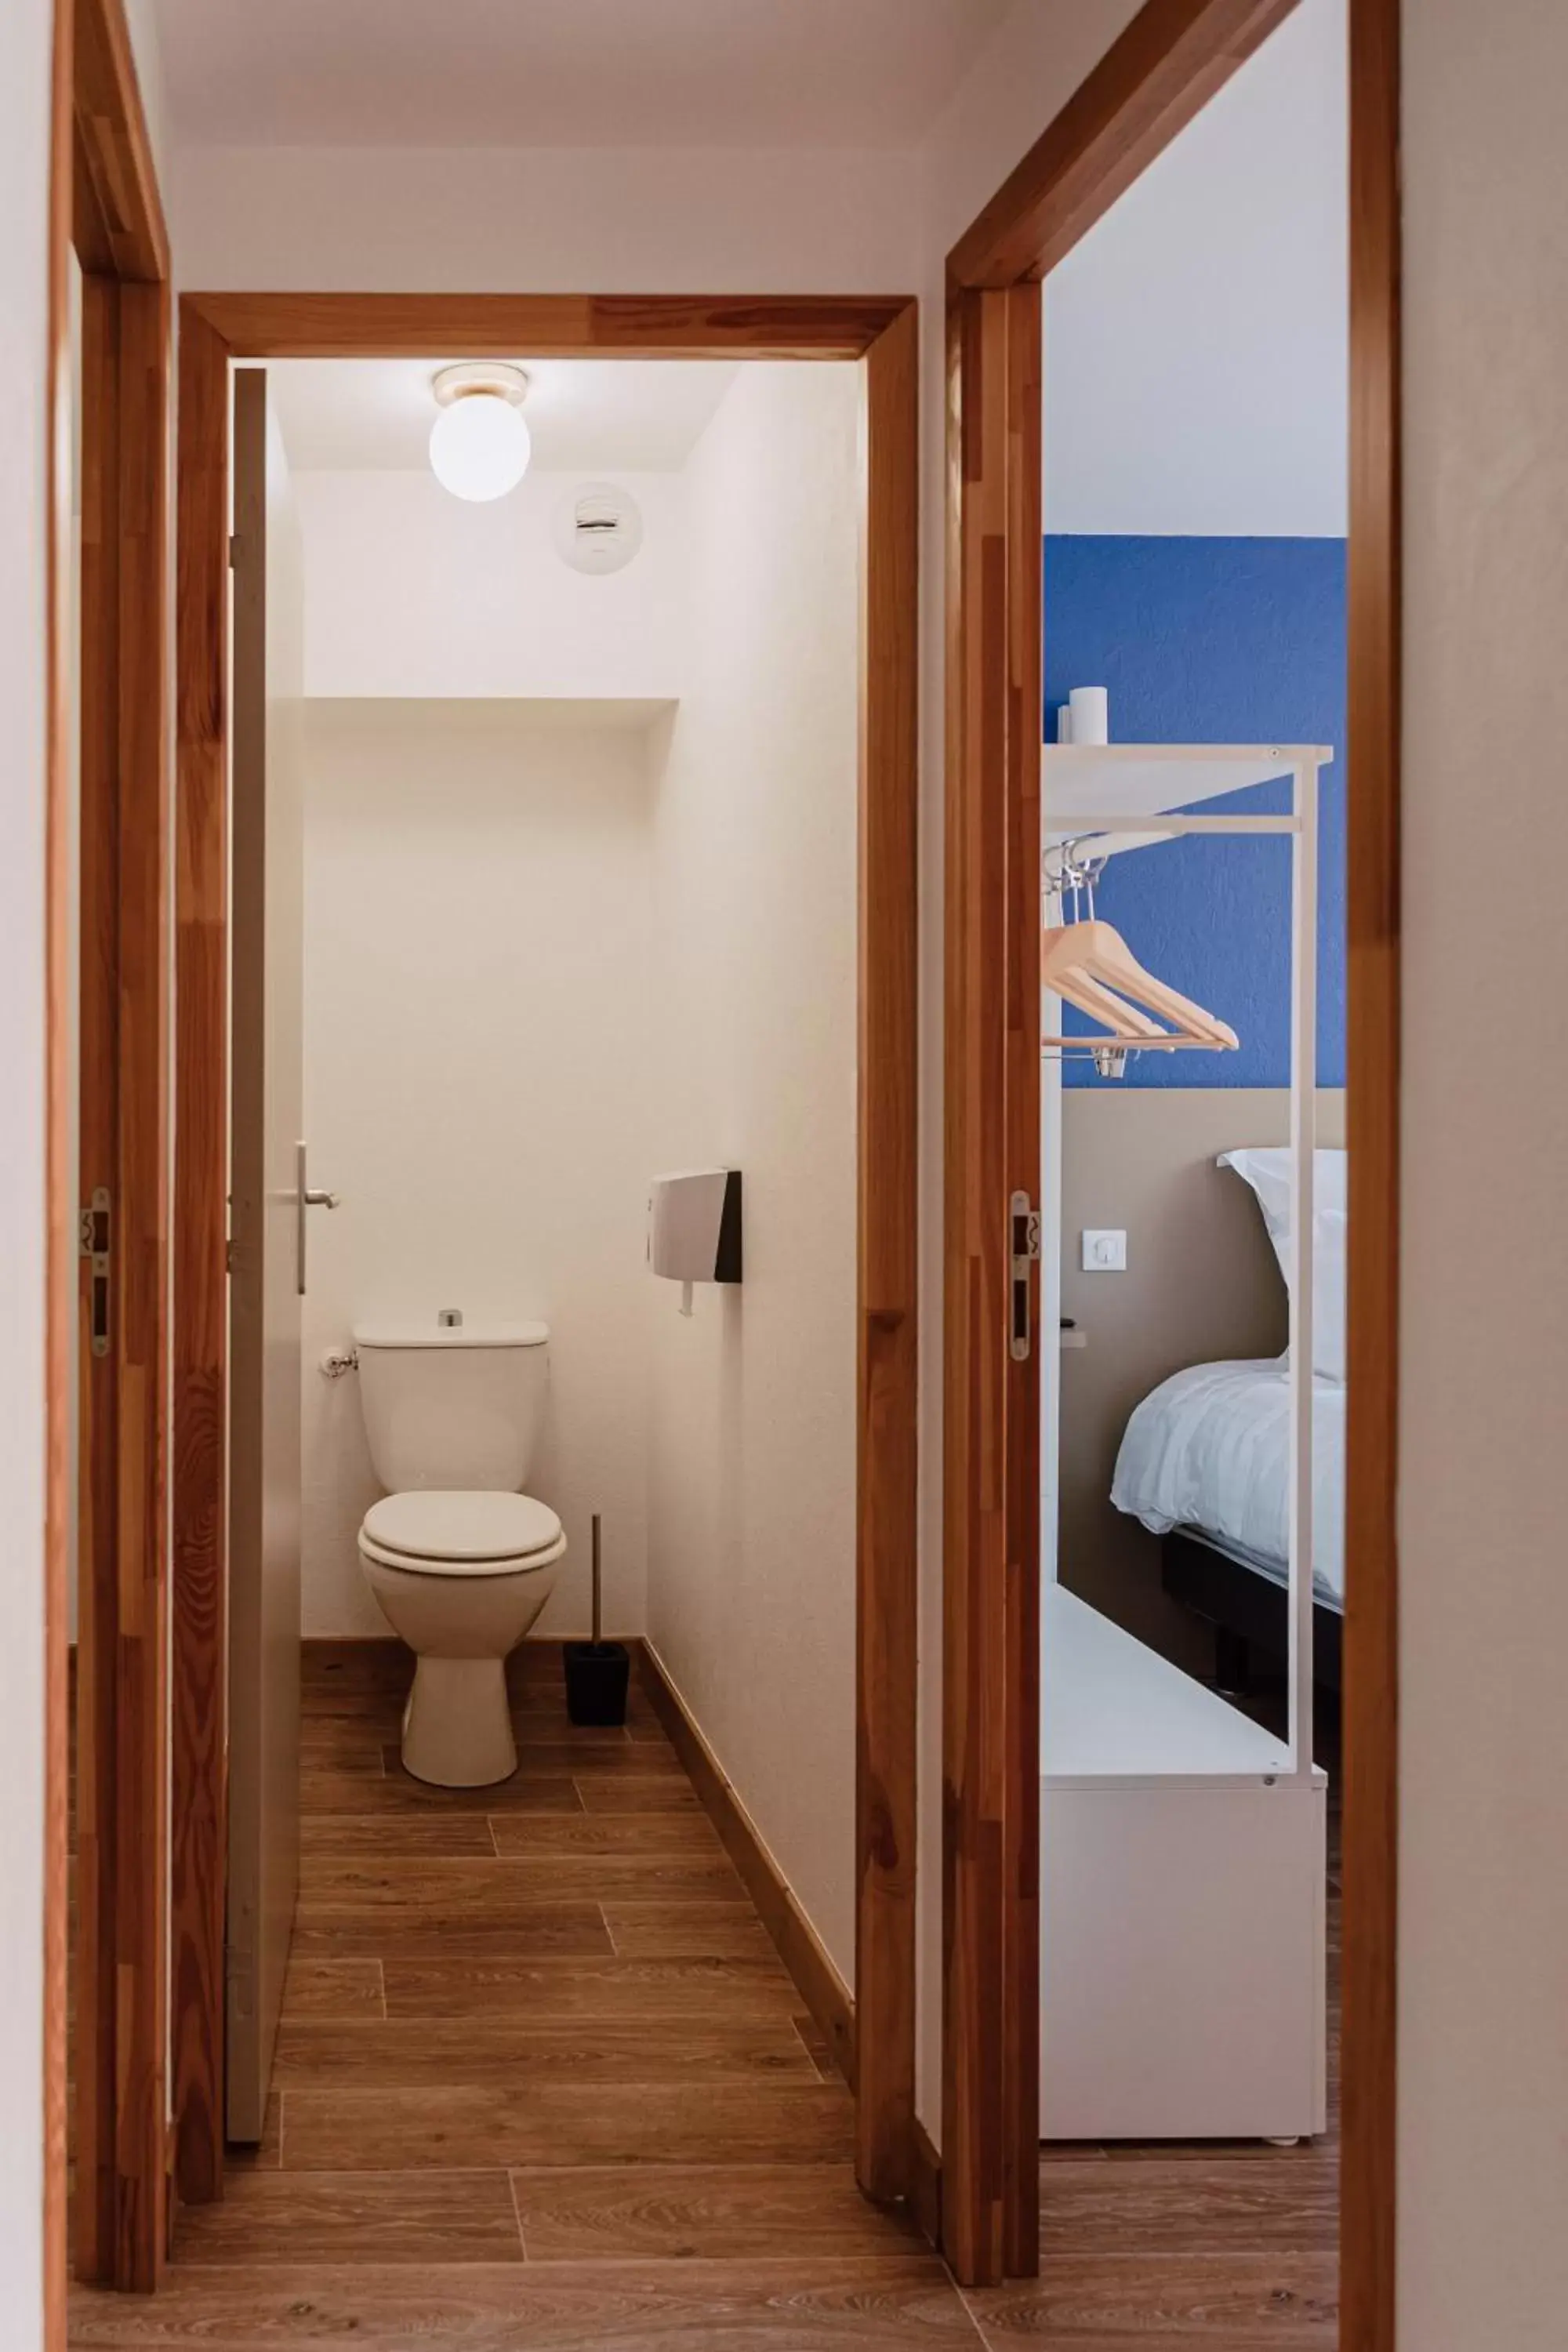 Toilet, Bathroom in Mage hôtels - Hôtel la grenette - Brasserie Bonté Divine